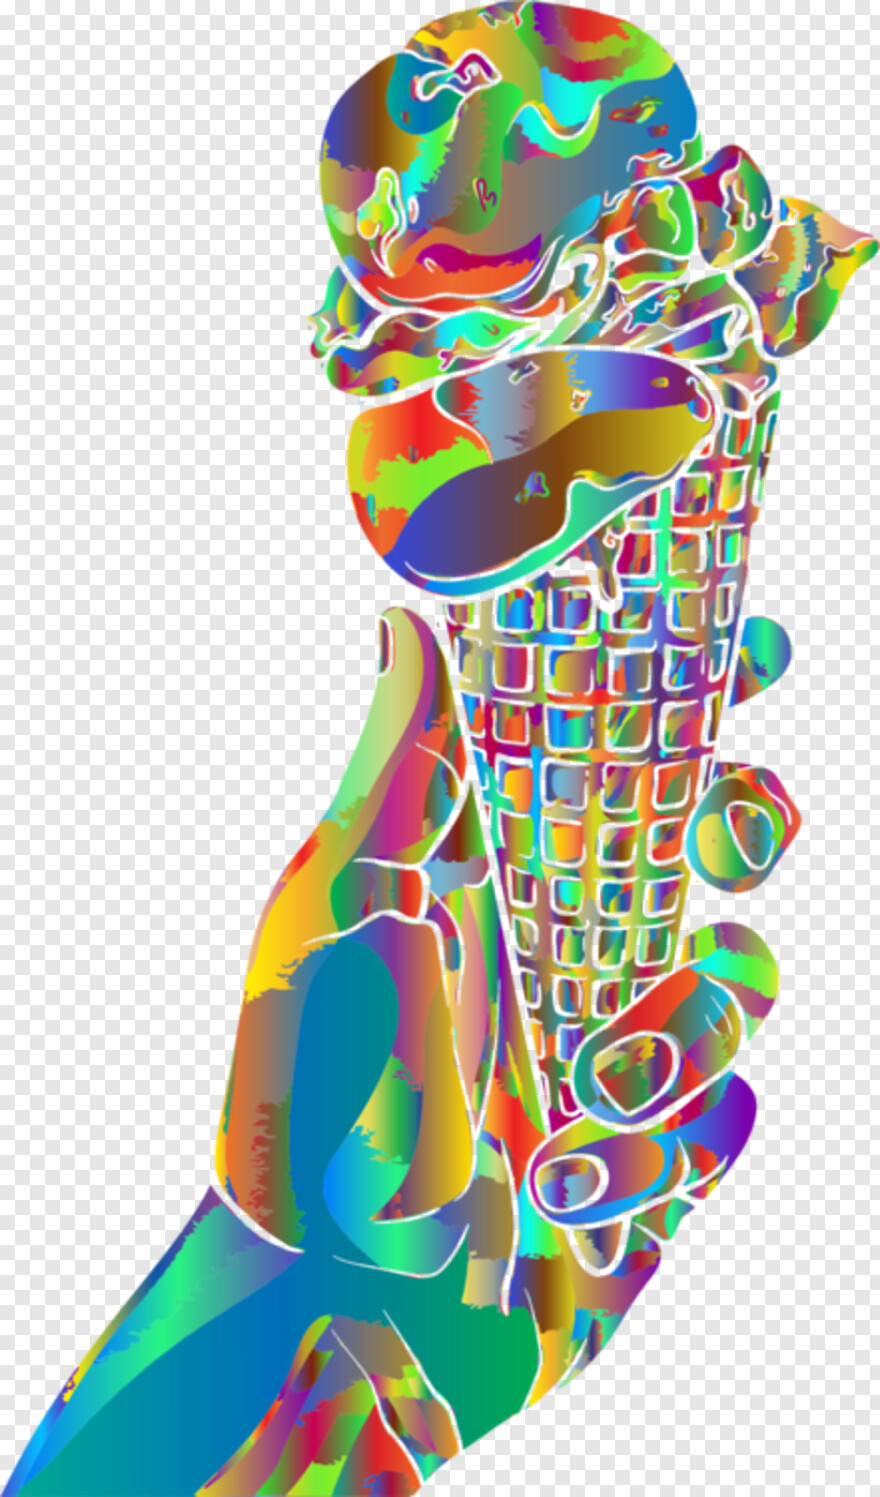 ice-cream-cone # 472833